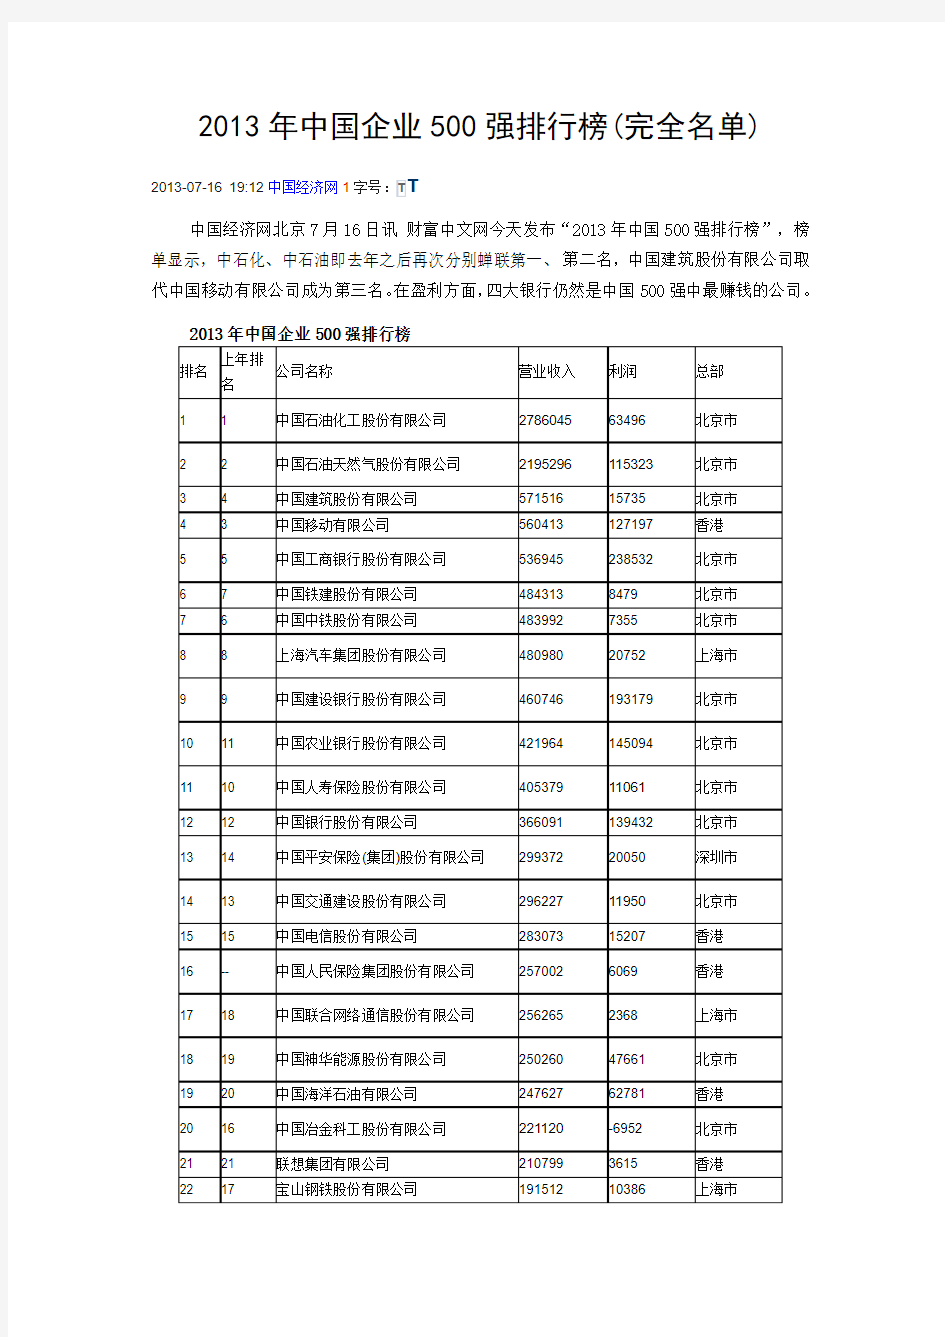 2013年中国企业500强排行榜(完全名单)